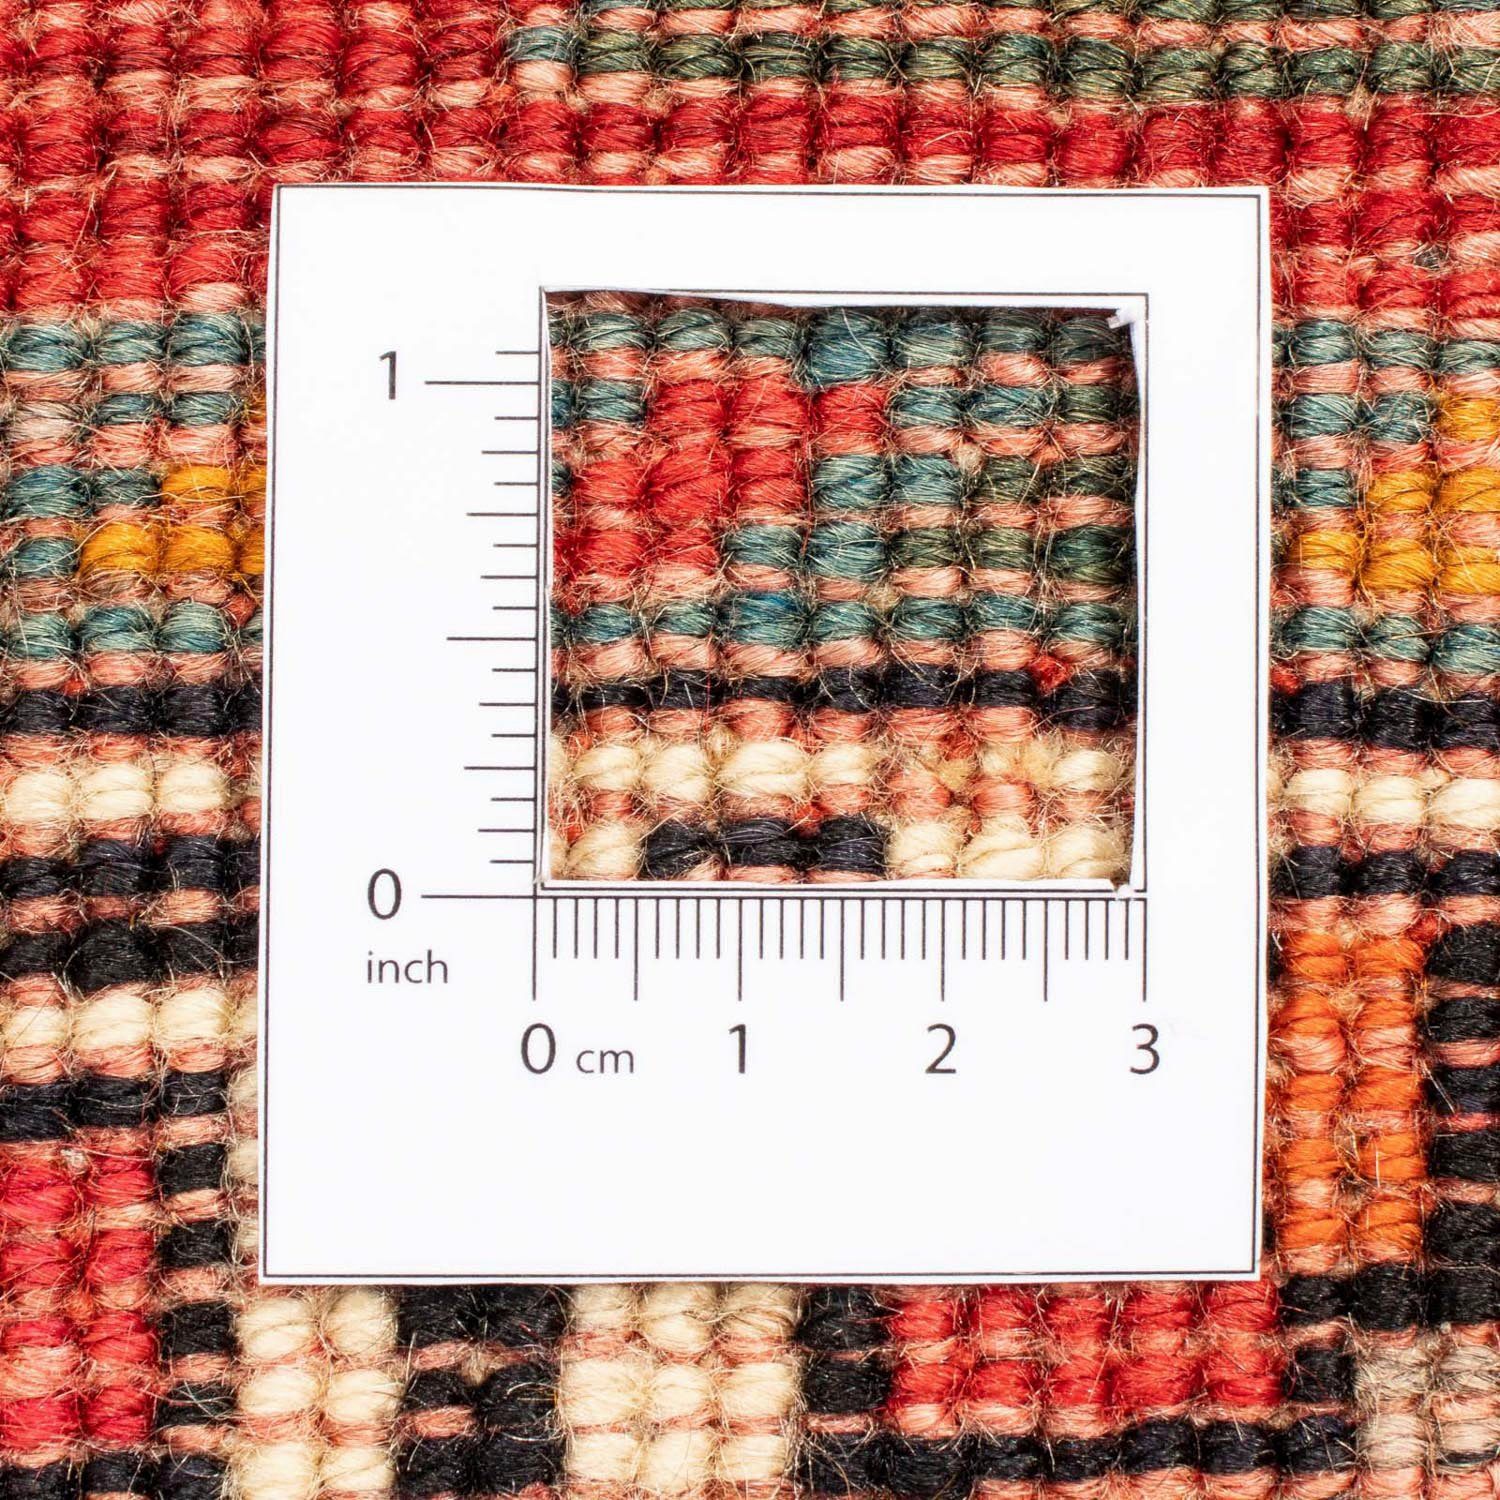 Shiraz rechteckig, Unikat Rosso mm, Nomadisch Zertifikat mit 205 cm, Wollteppich 10 Höhe: x 289 morgenland,